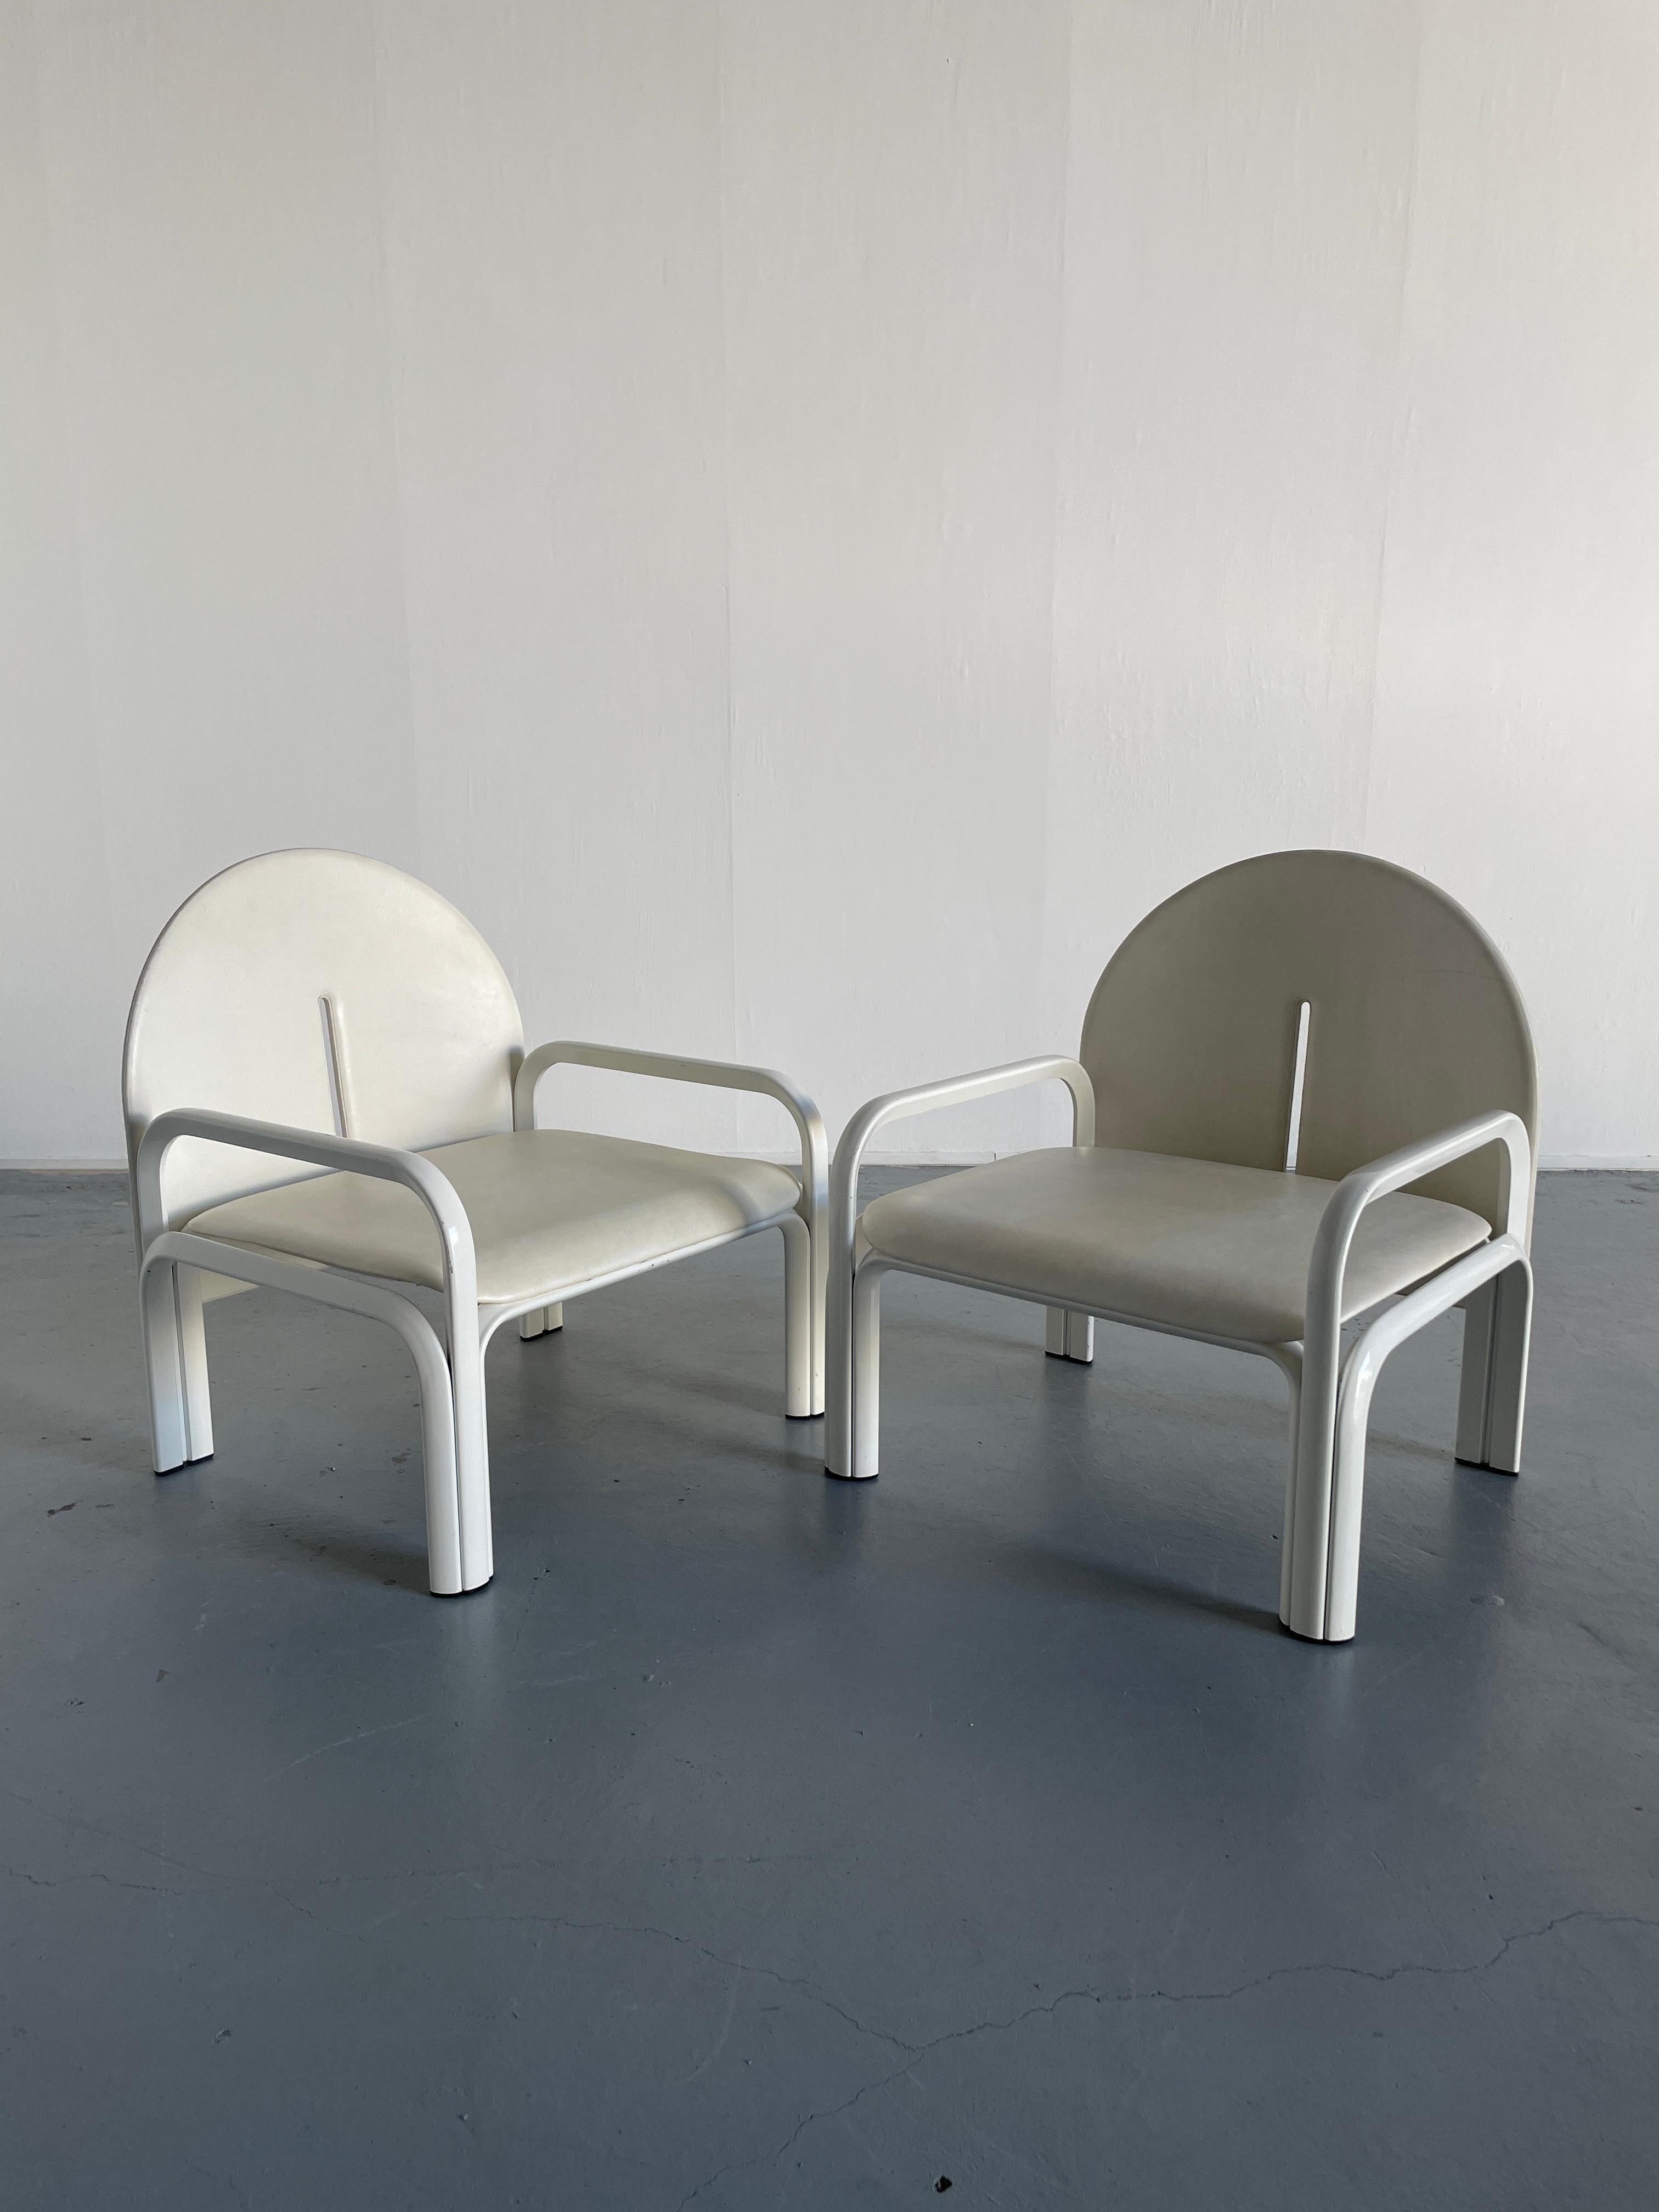 Außergewöhnlich seltener und sammelwürdiger Sessel, Modell '54L', entworfen von Gae Aulenti für Knoll International. Produktion in den späten 1970er Jahren, in einer noch selteneren, ganz weißen Ausgabe.

Das ikonische Design des 20.